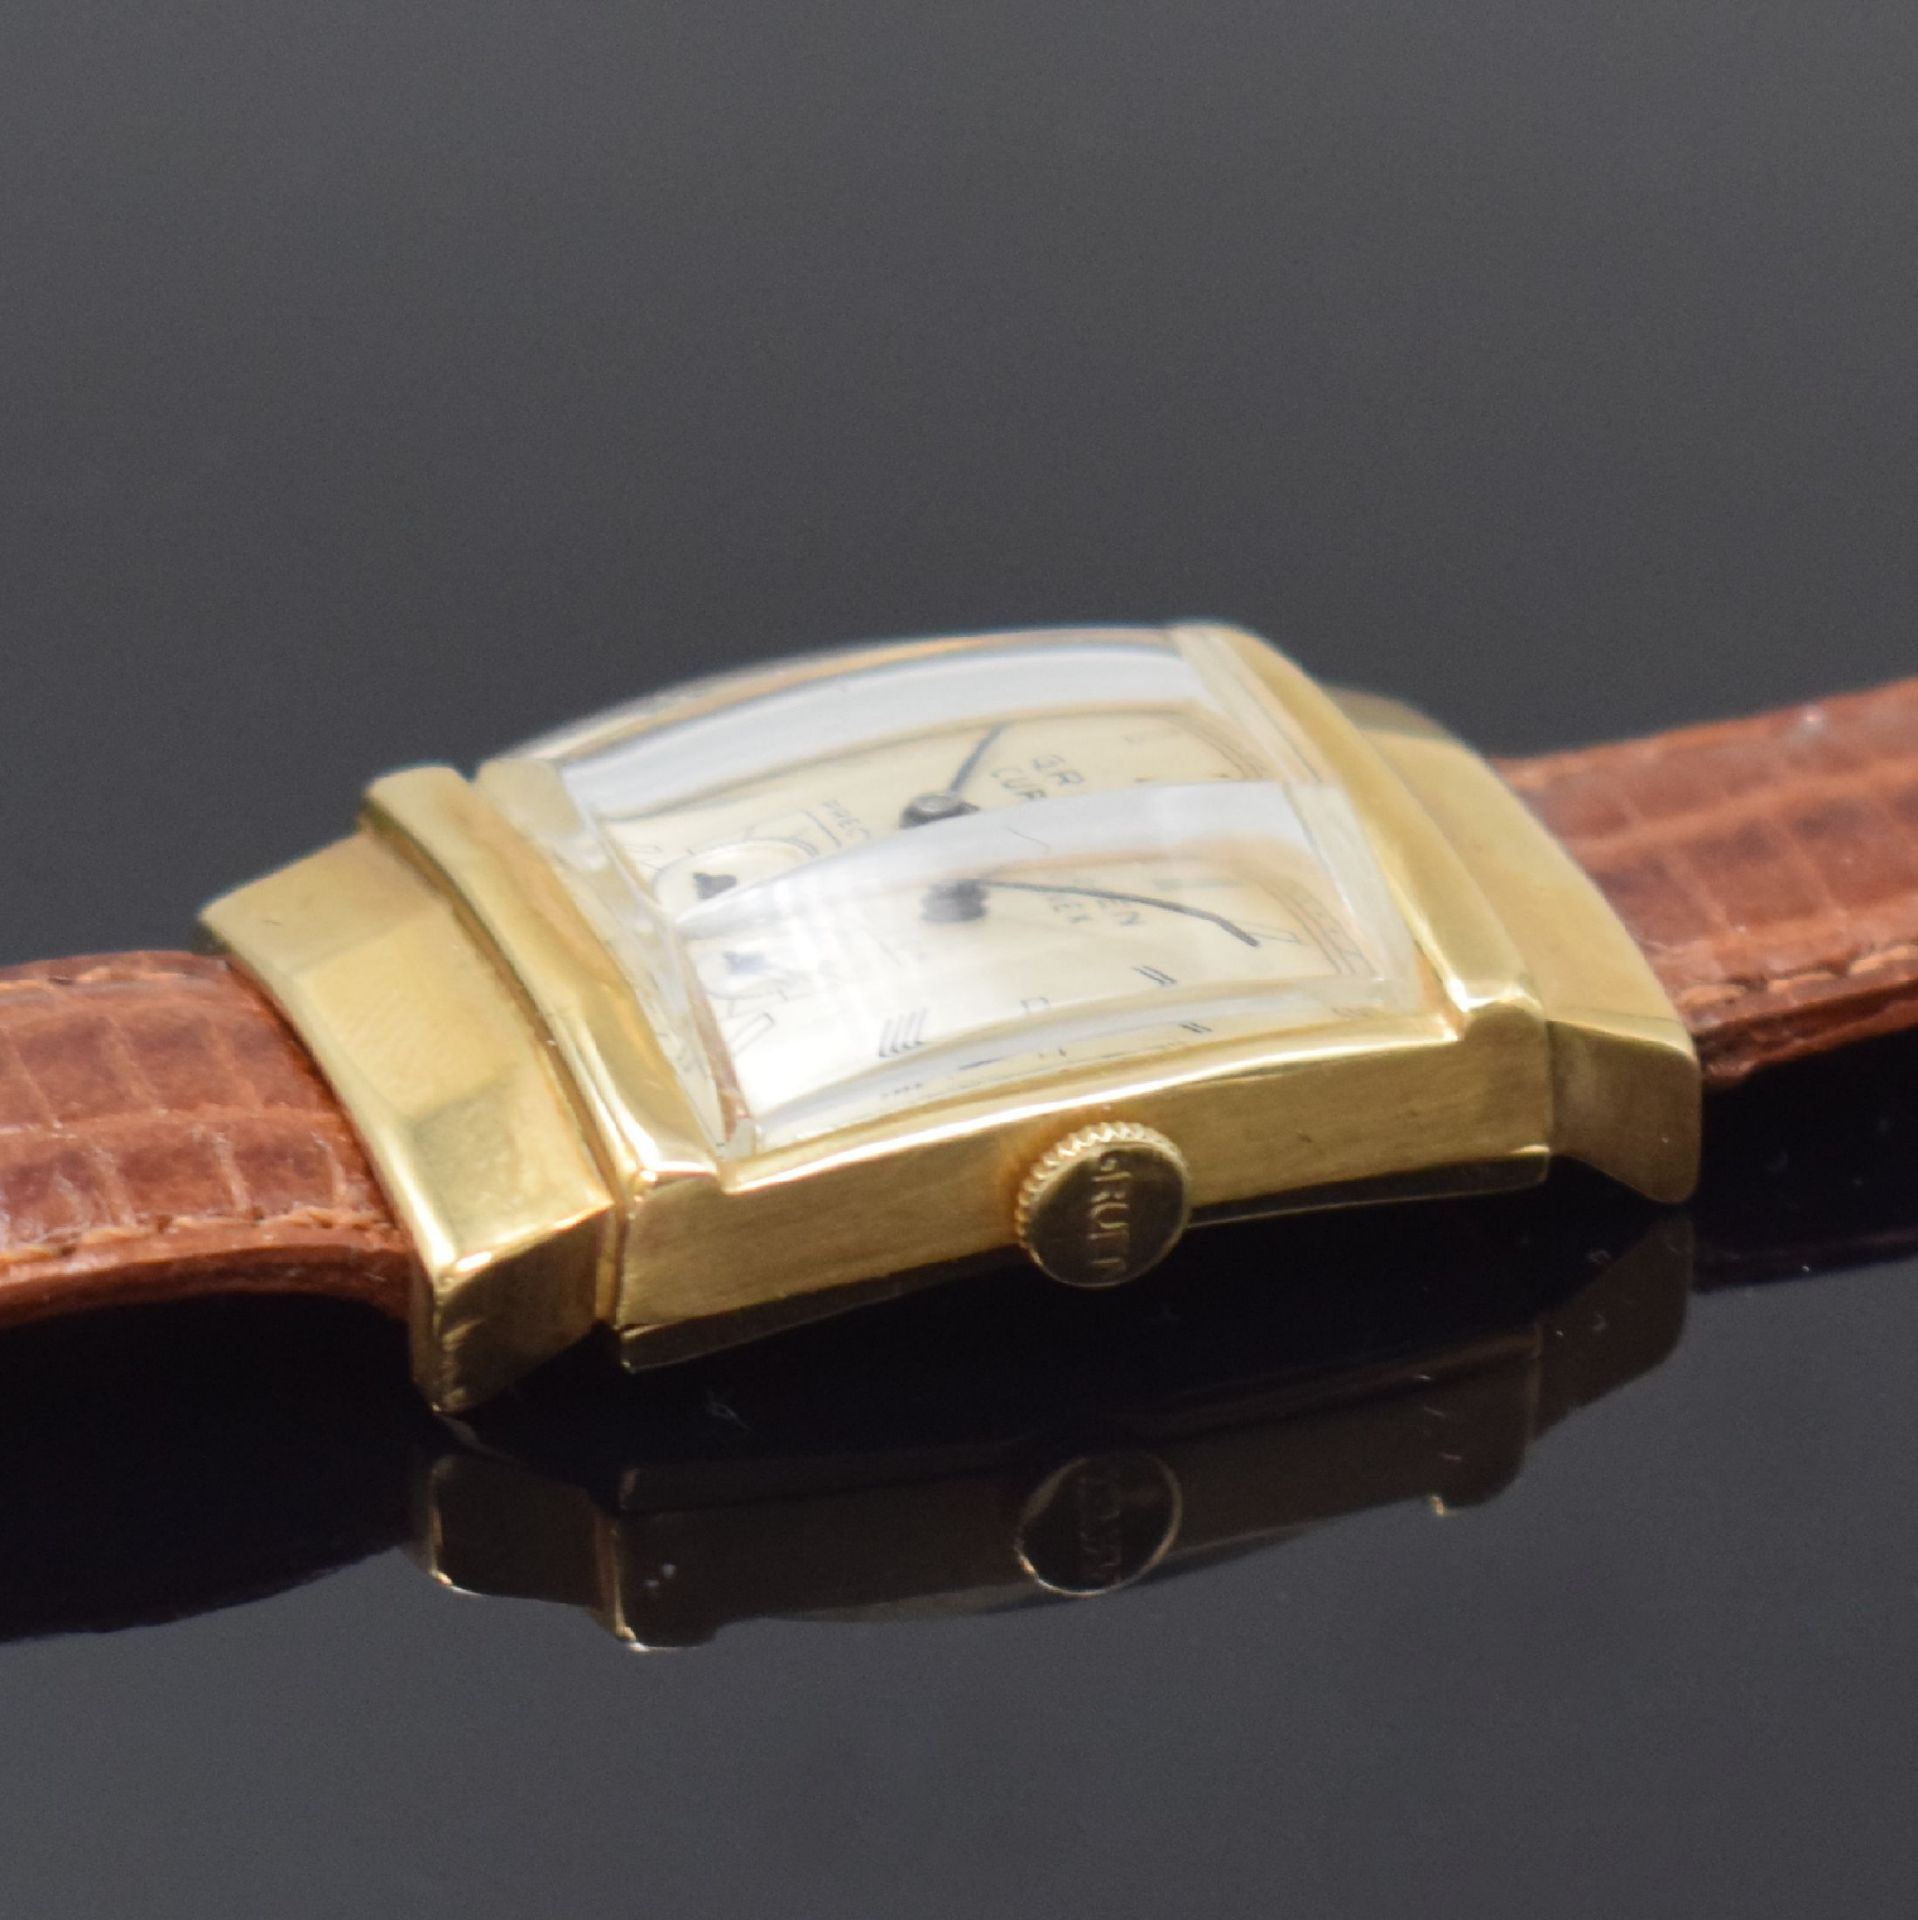 GRUEN Curvex rechteckige Armbanduhr Ref. 440- 584 in GG - Bild 3 aus 6